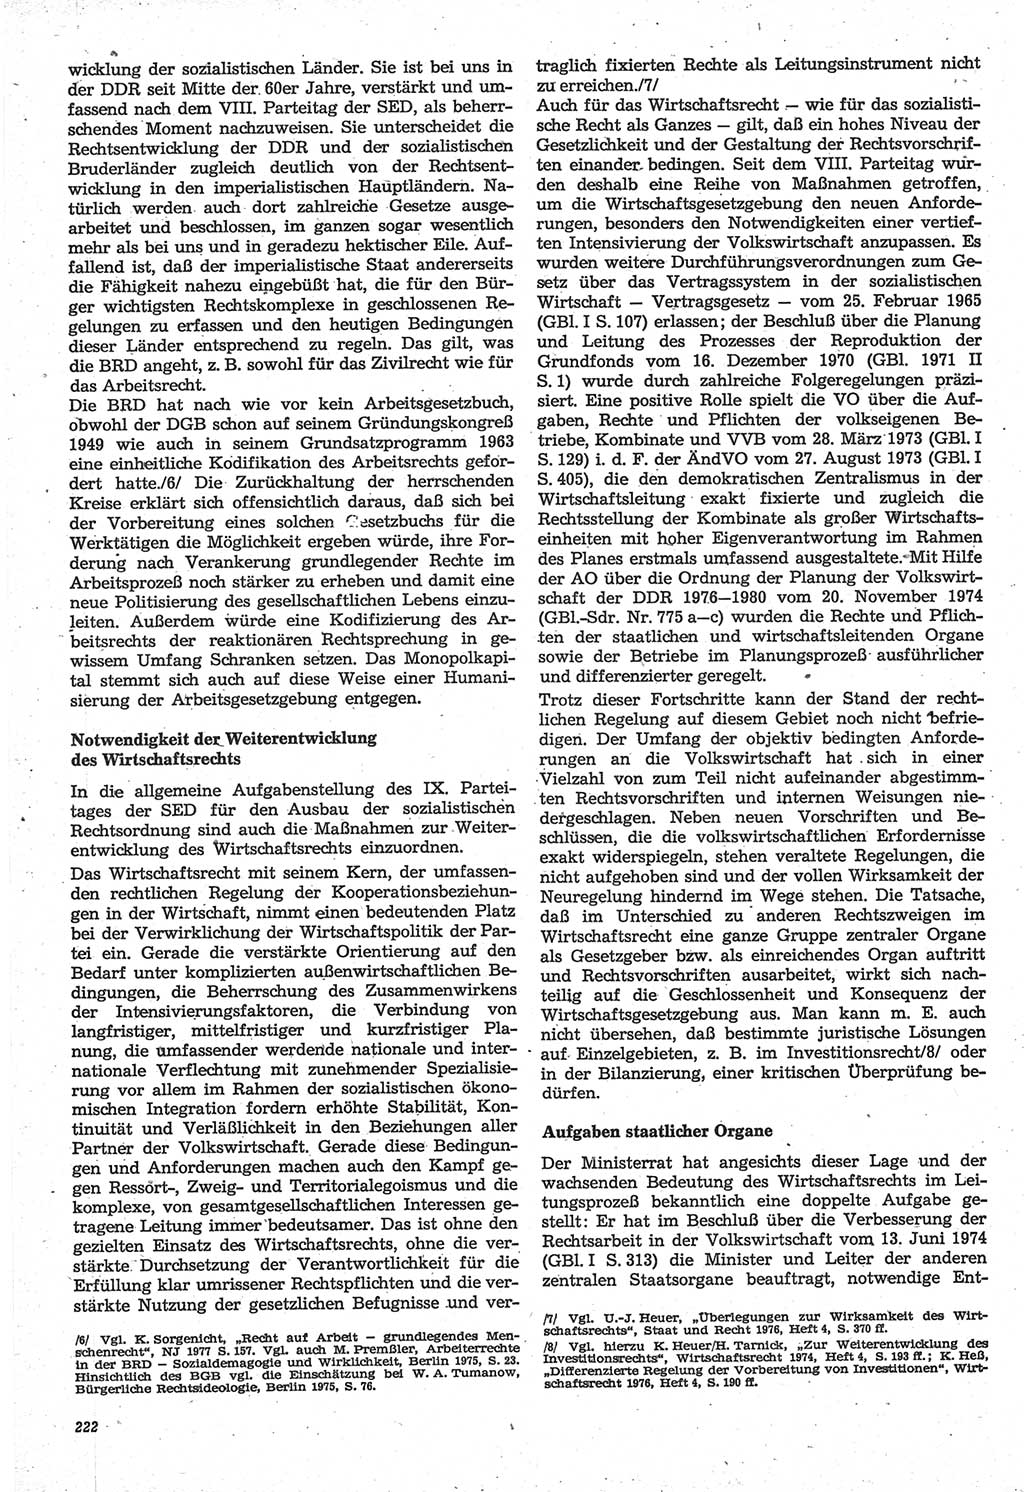 Neue Justiz (NJ), Zeitschrift für Recht und Rechtswissenschaft-Zeitschrift, sozialistisches Recht und Gesetzlichkeit, 31. Jahrgang 1977, Seite 222 (NJ DDR 1977, S. 222)